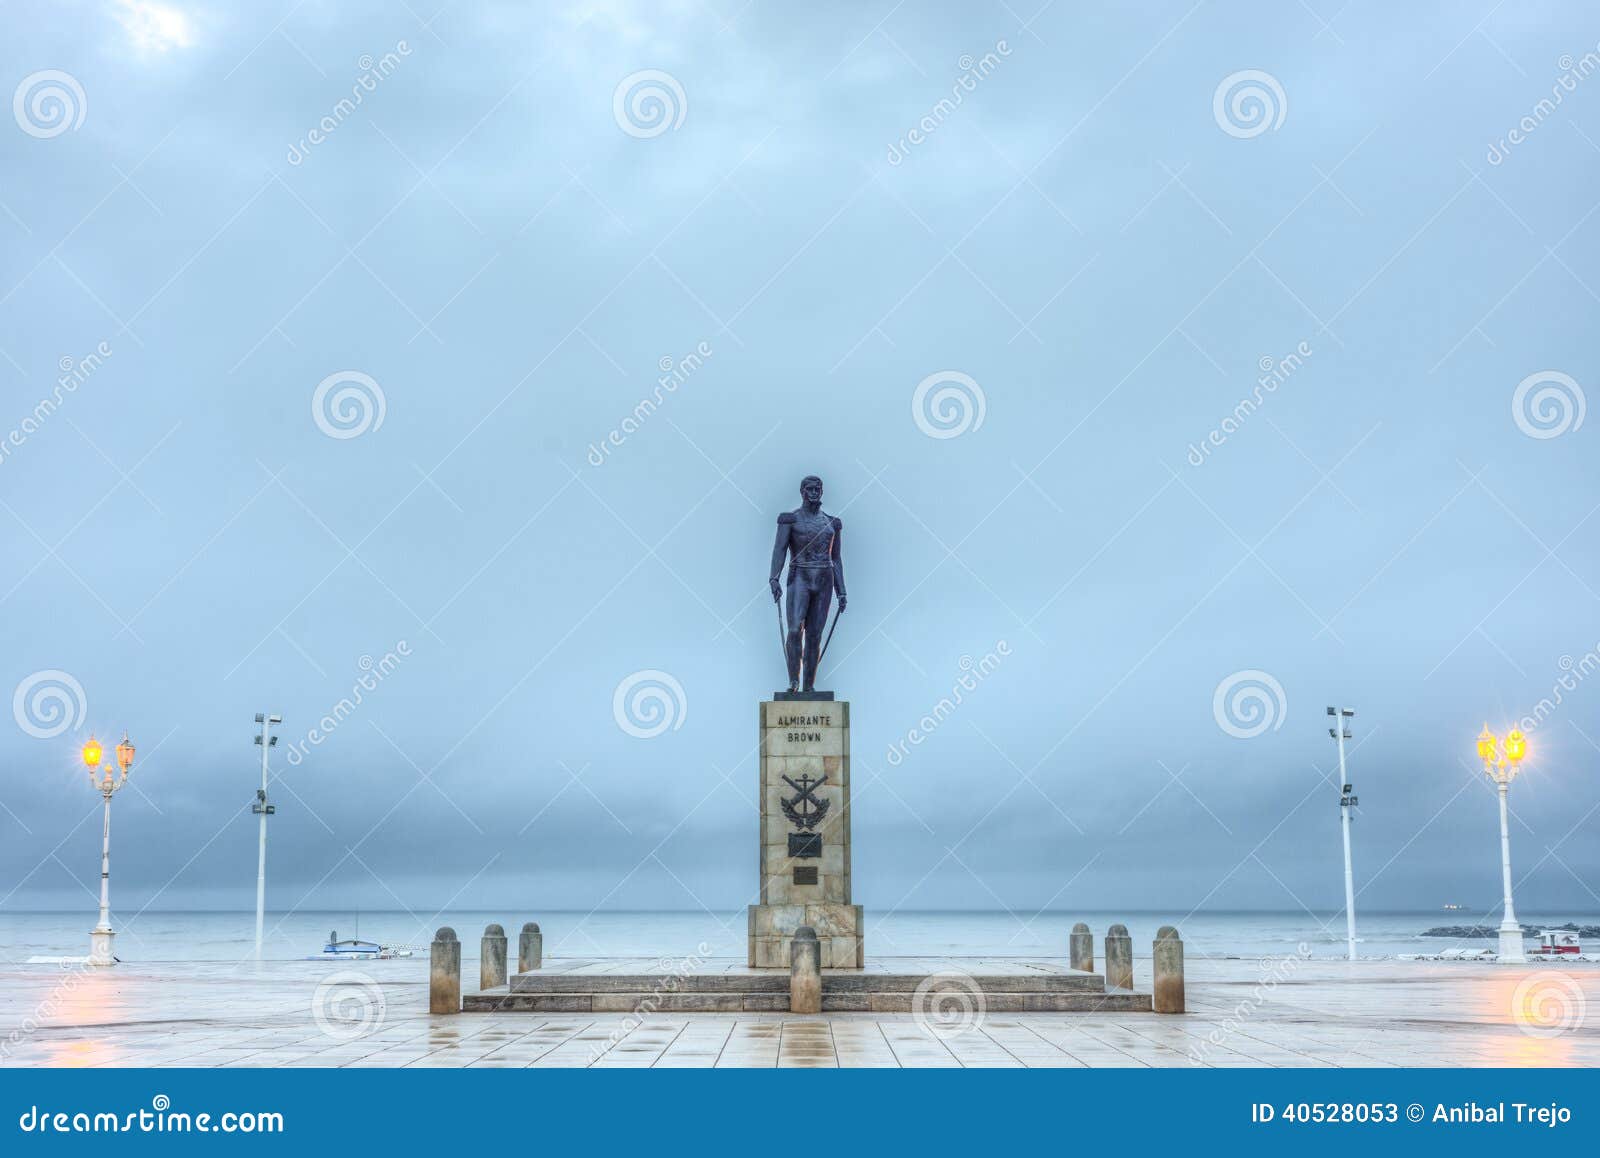 almirante brown square in mar del plata, argentina